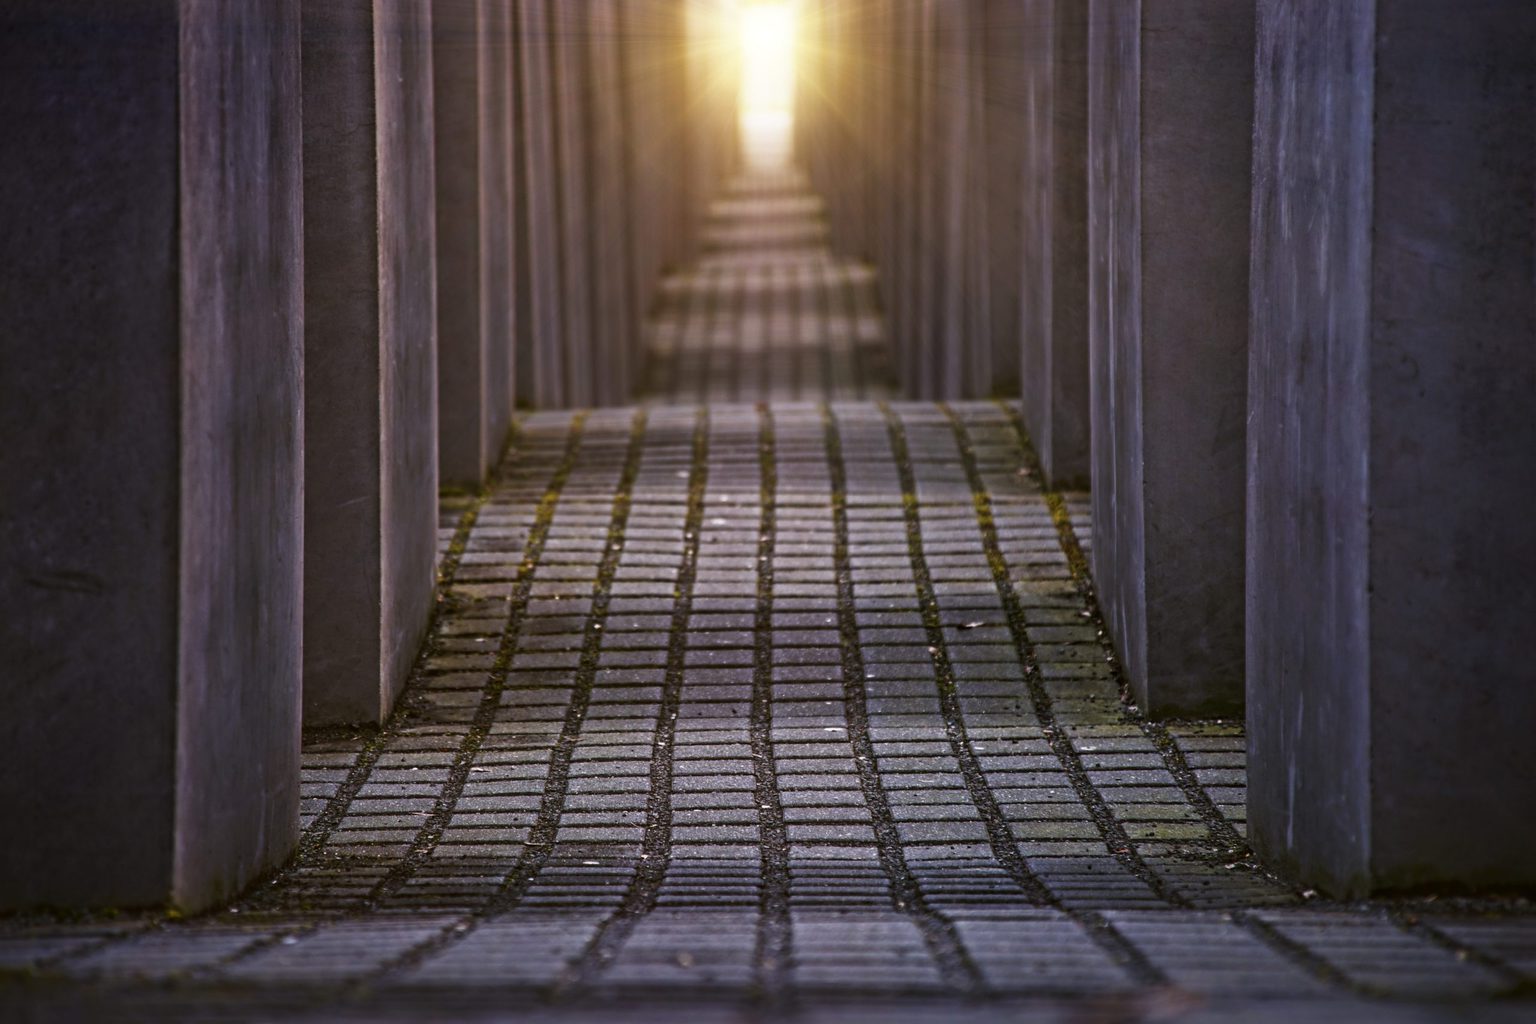 Het holocaust monument in Berlijn tijdens de zonsopgang